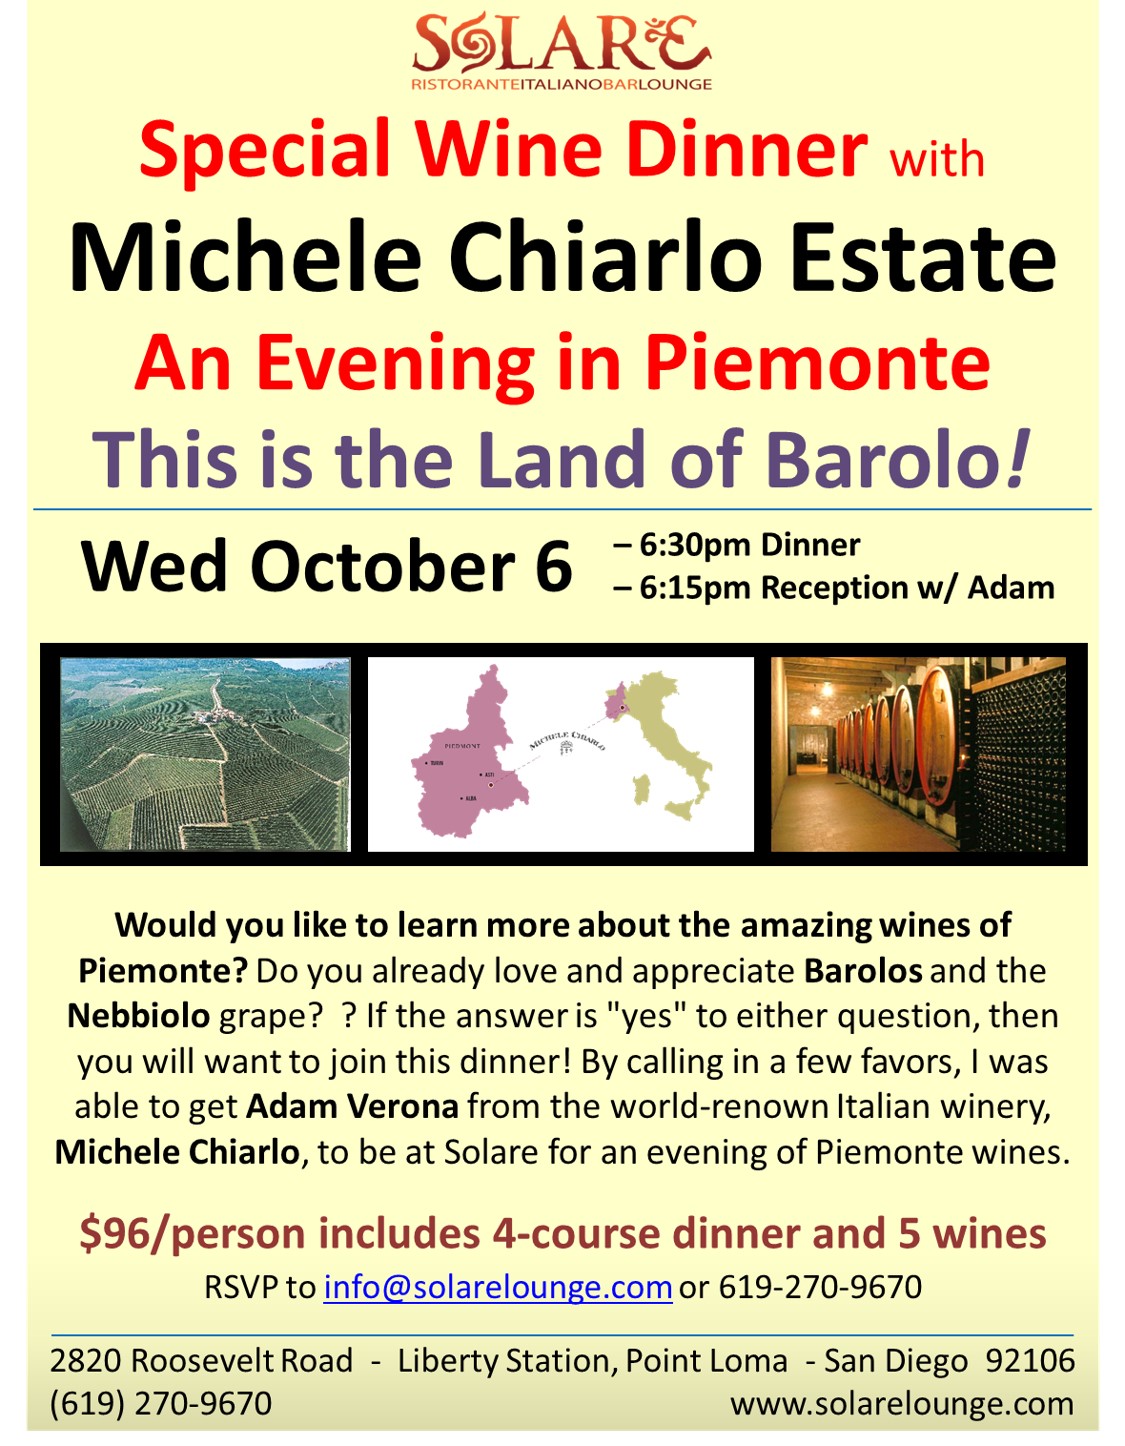 <a id="Solare-Michele-Chiarlo-Wine-Dinner"></a>Solare Wine Dinner - An Evening in Piemonte with Michele Chiarlo Wine Estate